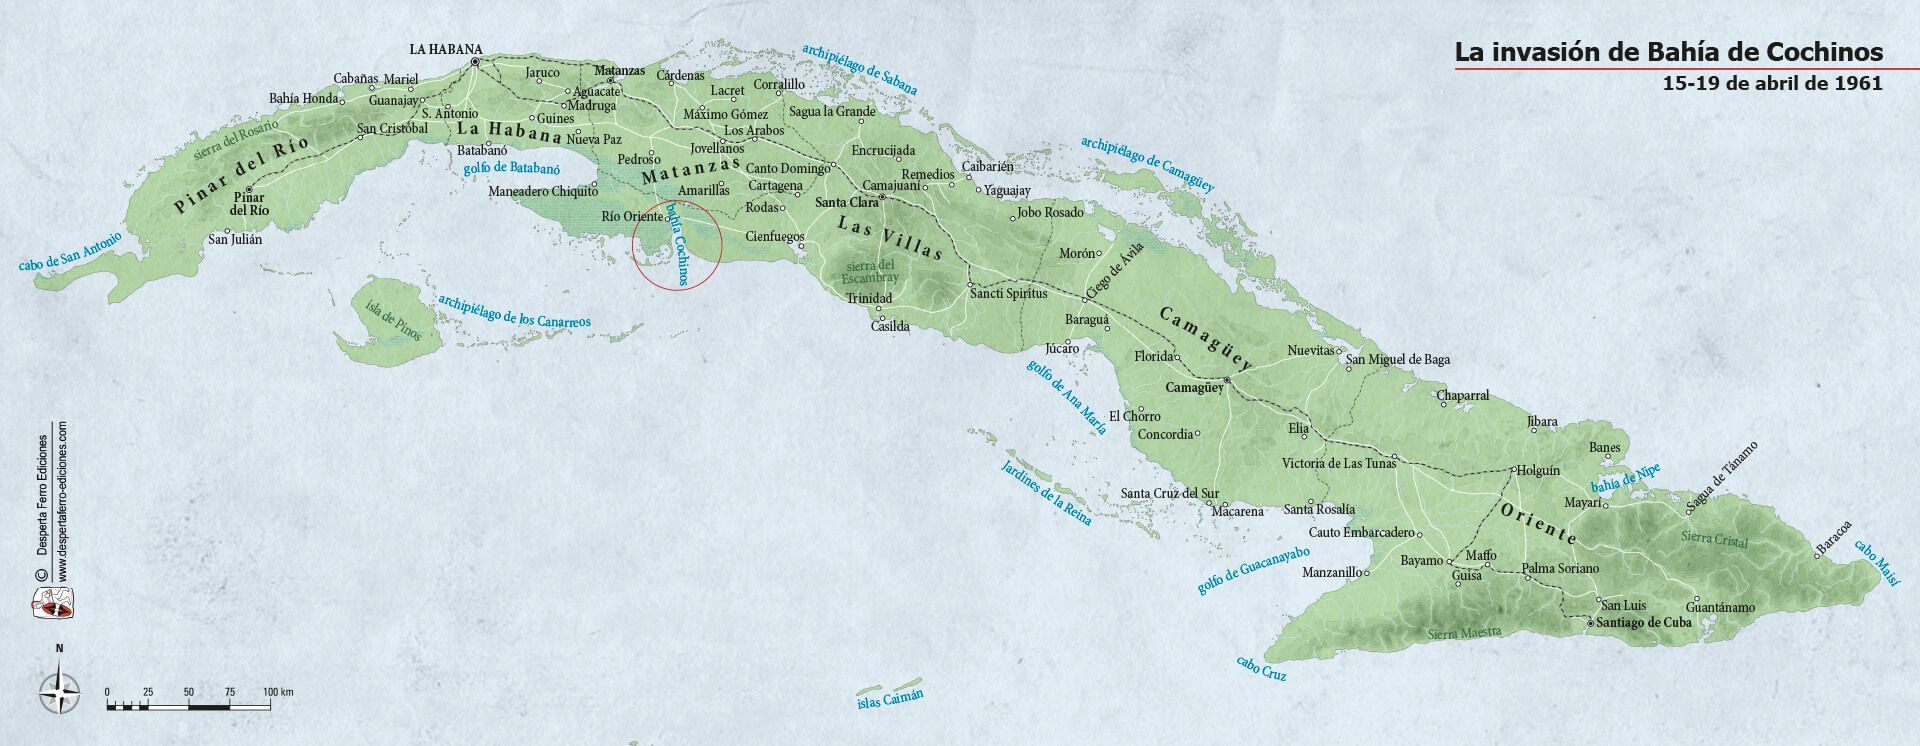 Mapa Cuba Bahía de cochinos